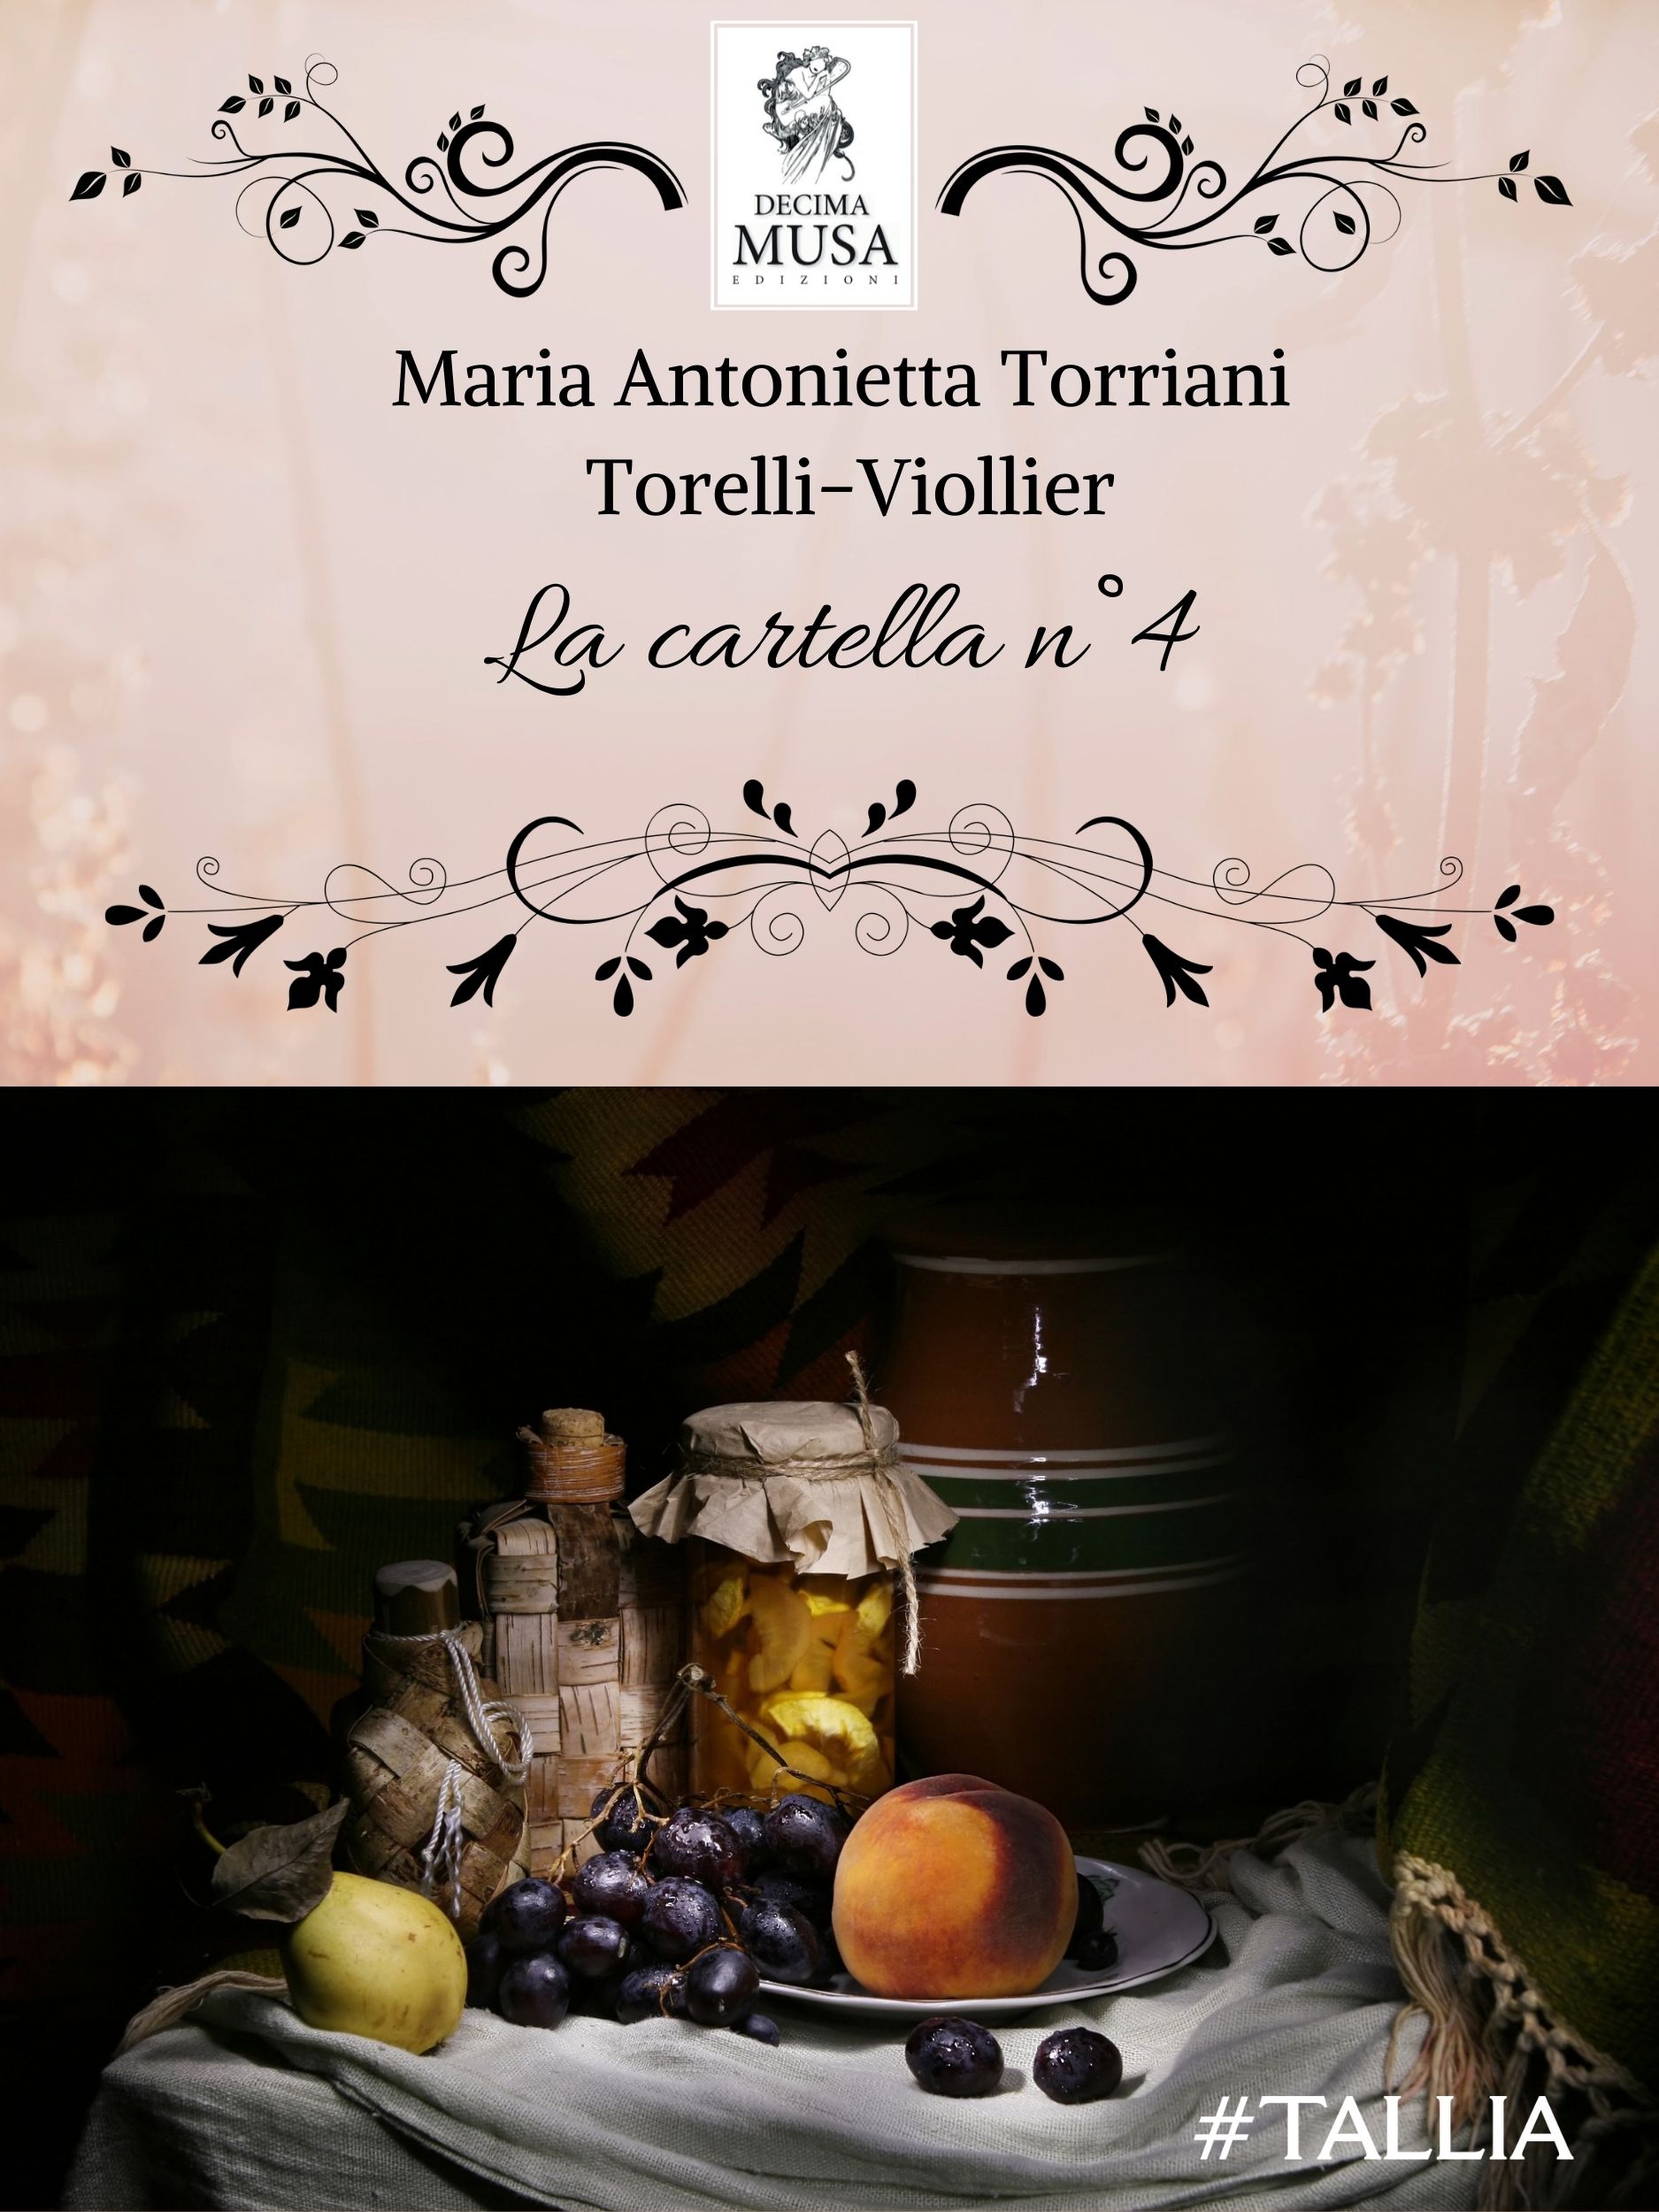 Maria Antonietta Torriani Torelli-Viollier